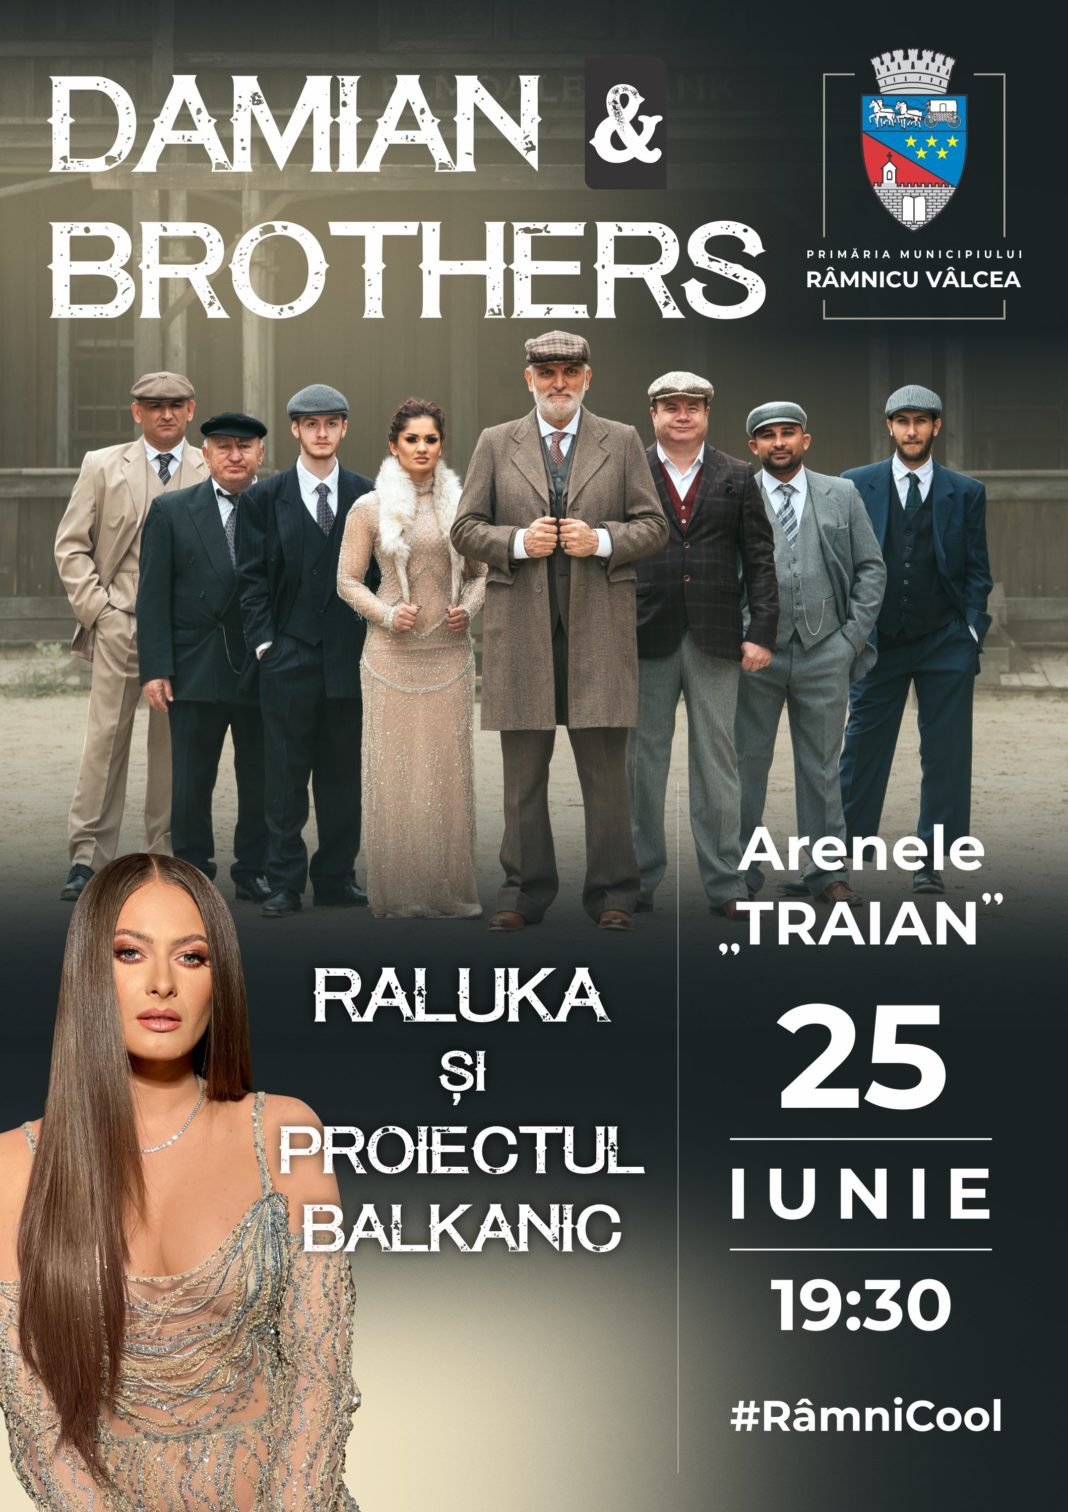 Sâmbătă, 25 iunie, de la ora 19.30, pe scena Arenelor ”Traian” vor evolua Damian & Brothers